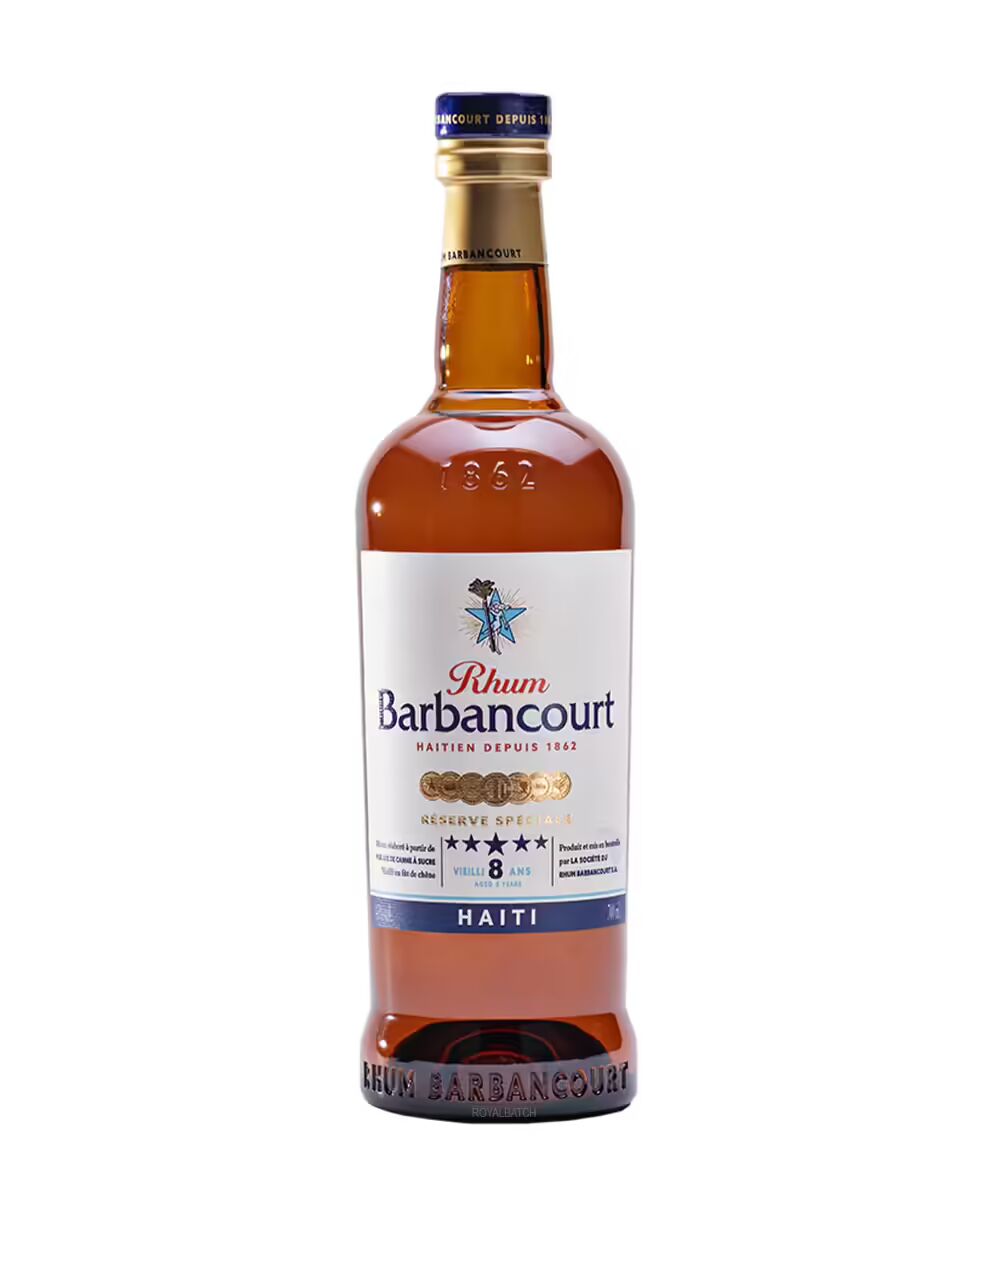 Rhum Barbancourt Haiti 8 Year Old Rum